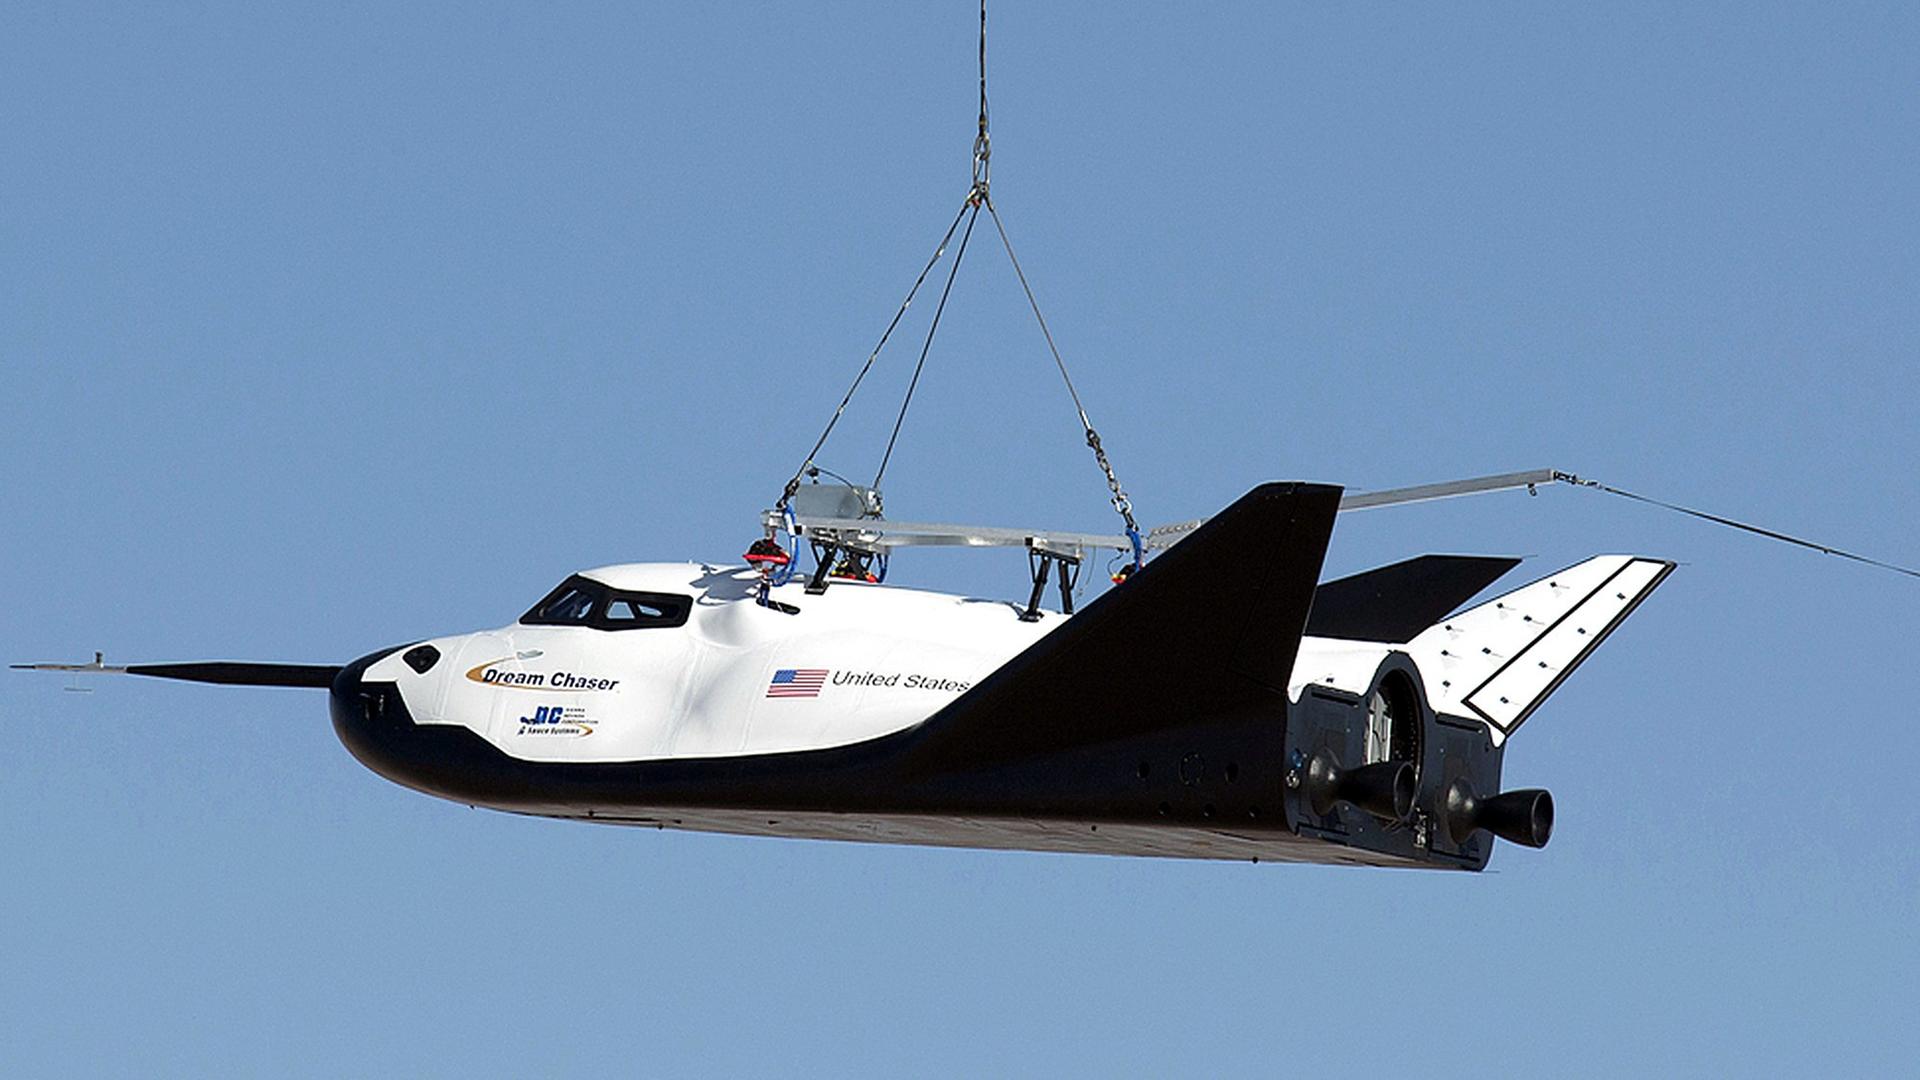 Ein Hubschrauber trägt den Mini-Shuttle Dream Chaser an einem Seil.